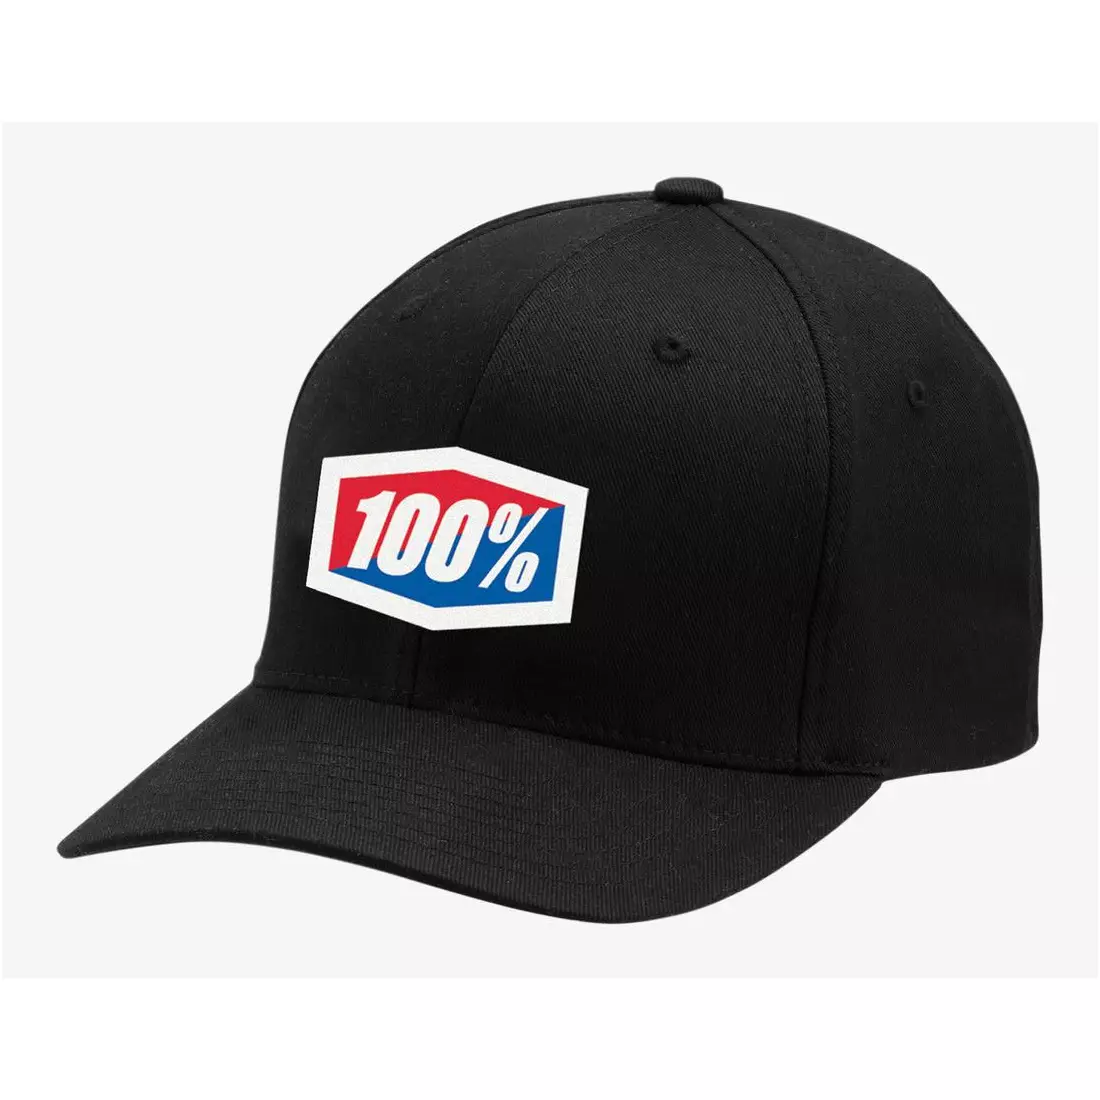 100% bejzbalová čiapka official x-Fit  flexfit hat black STO-20037-001-17